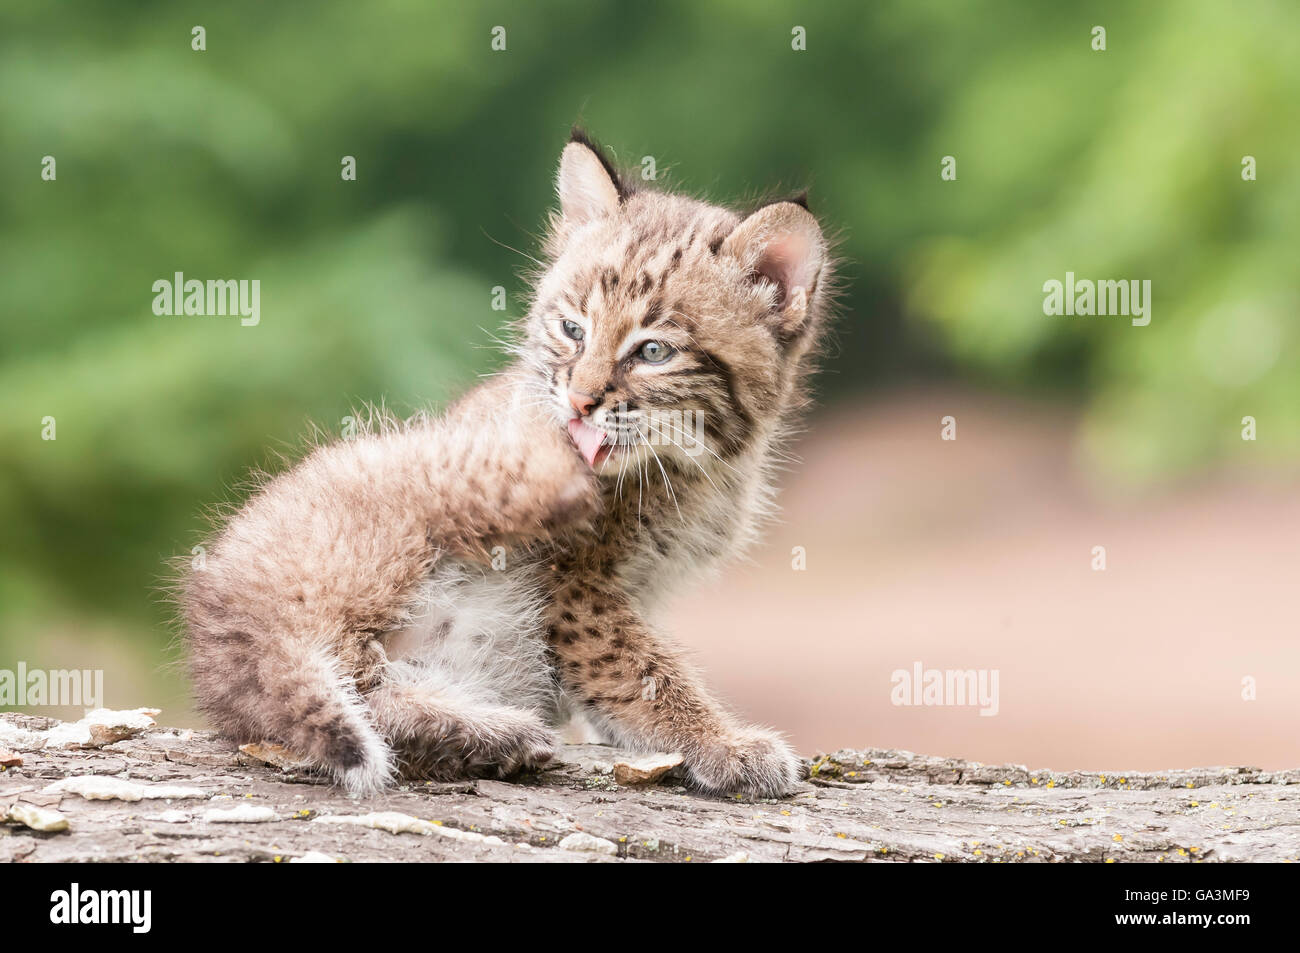 Chaton, Bobcat lynx (Felis rufus), 8 semaines, s'étend du sud du Canada au nord du Mexique Banque D'Images